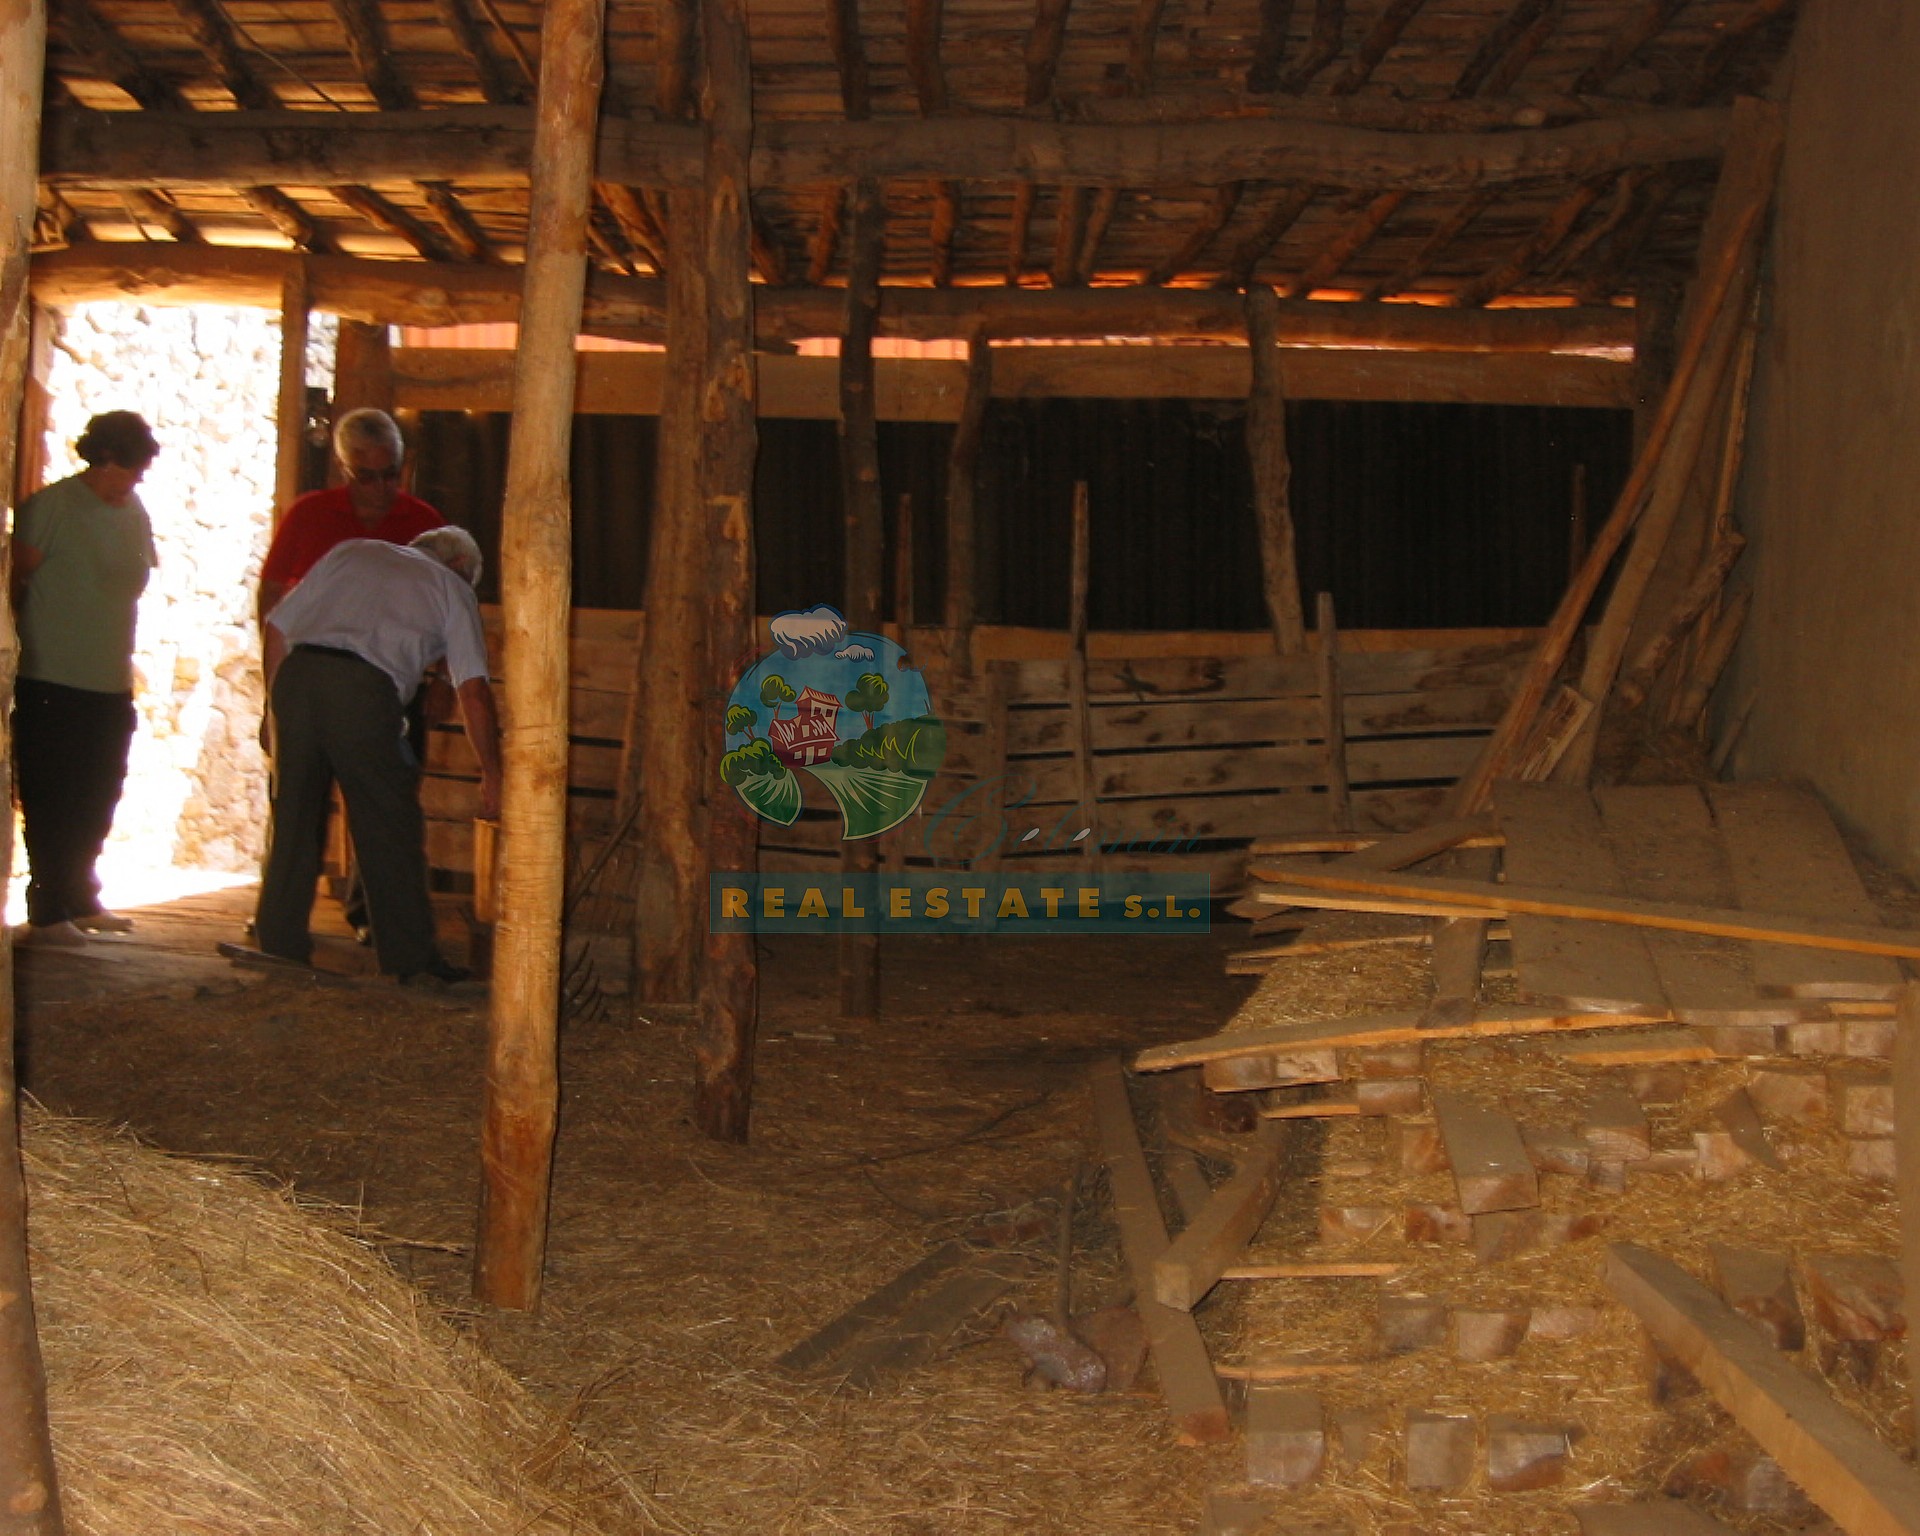 Rural house with yard & barn in El Tejado.